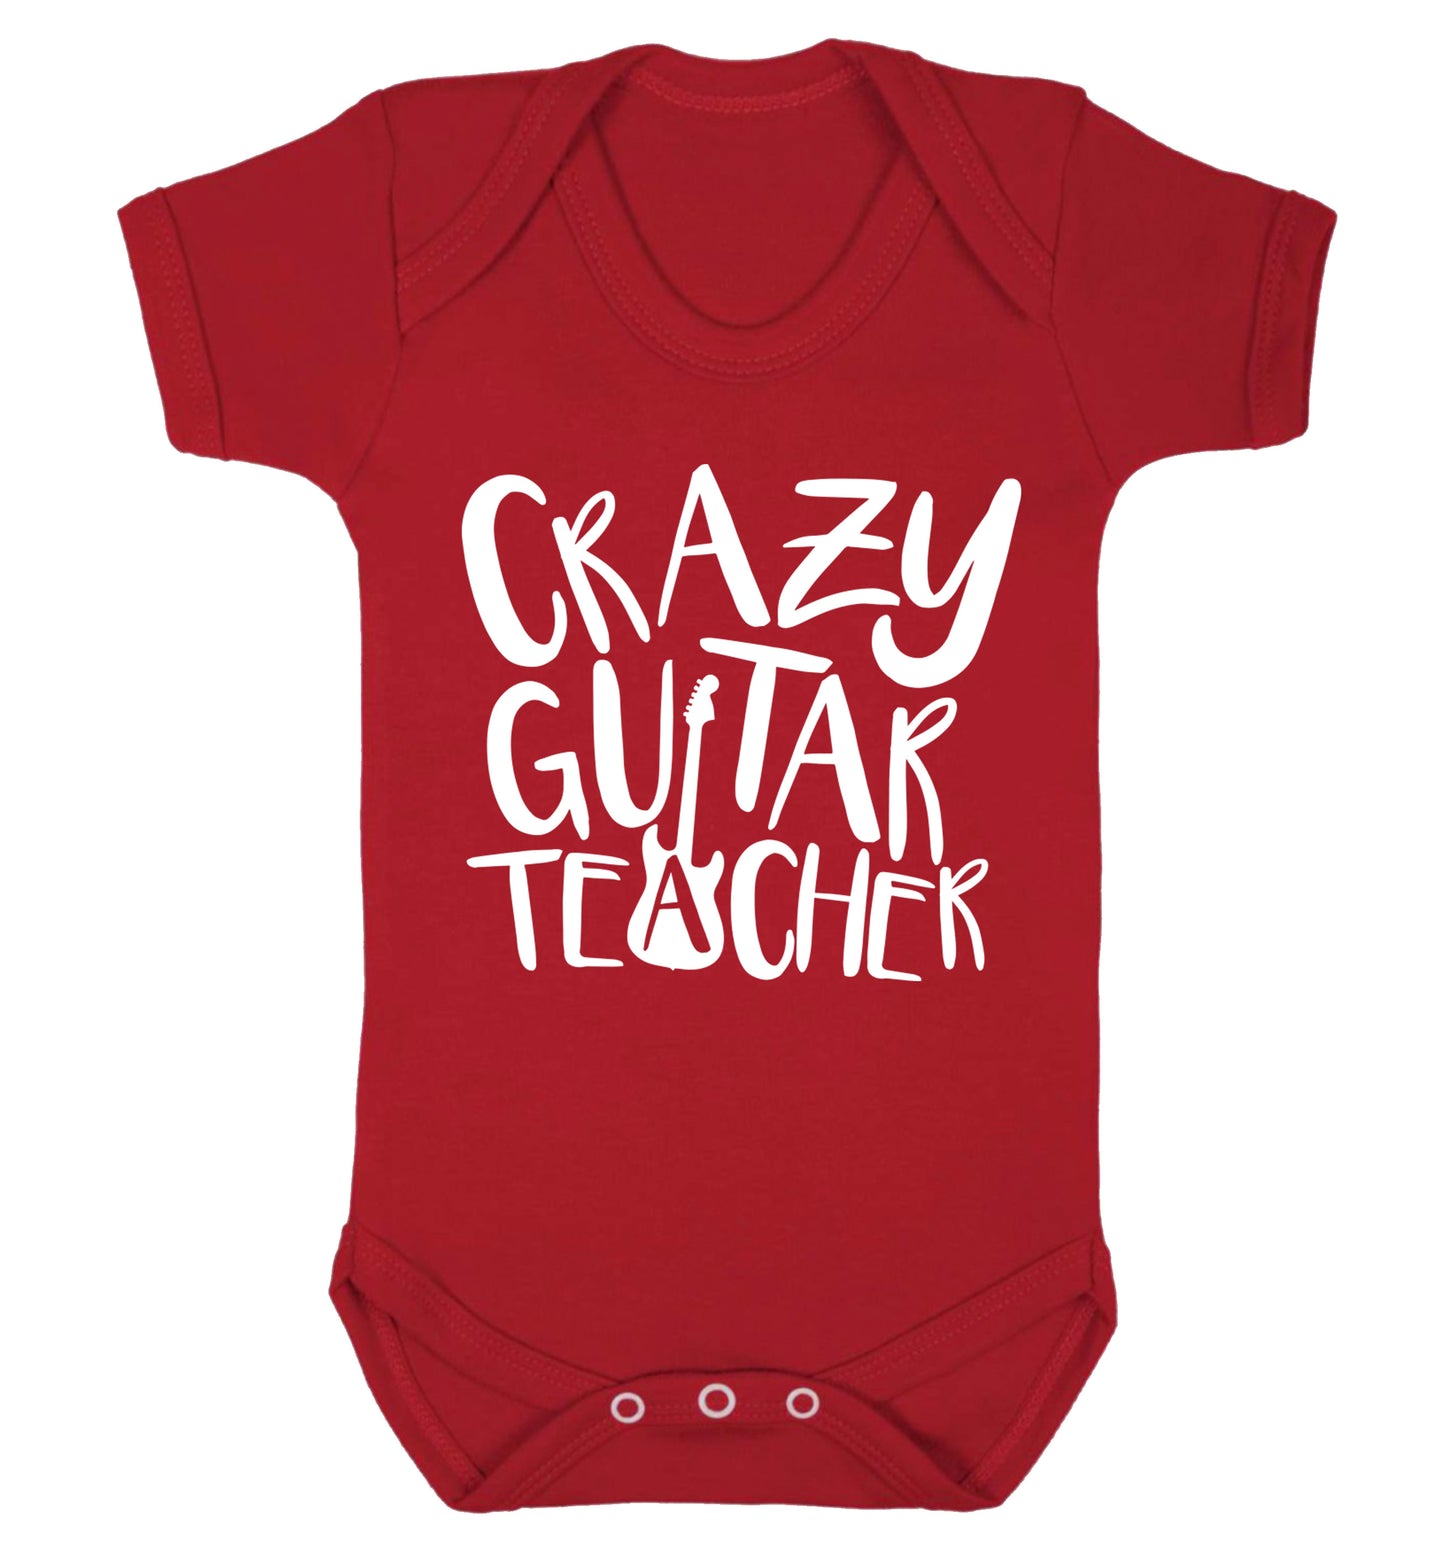 Crazy guitar teacher Baby Vest red 18-24 months